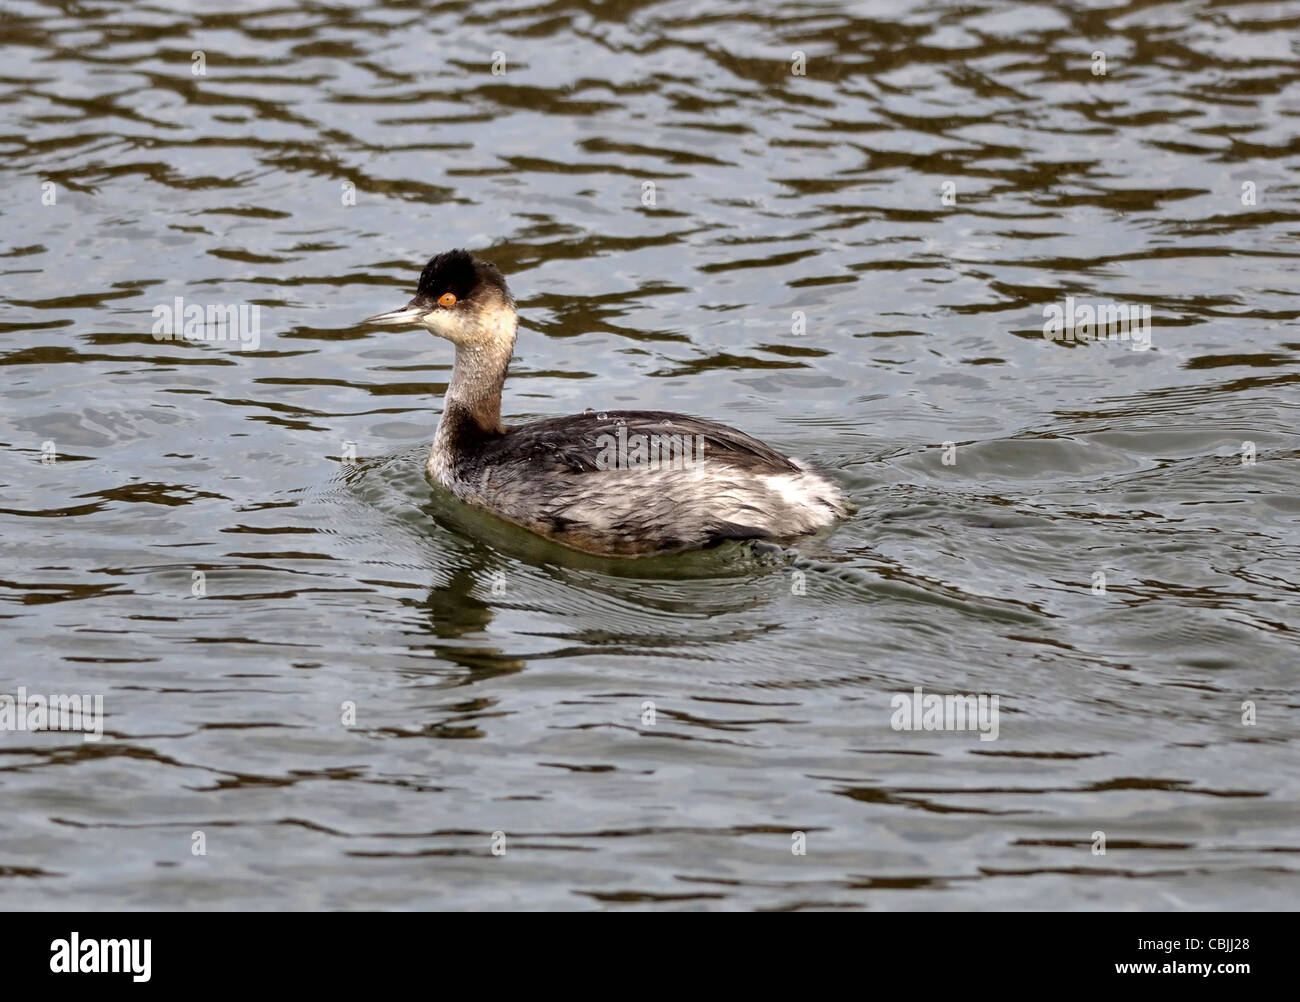 Un canard de Grebe élevé (Podiceps nigricollis) vu ici sur l'eau. Banque D'Images